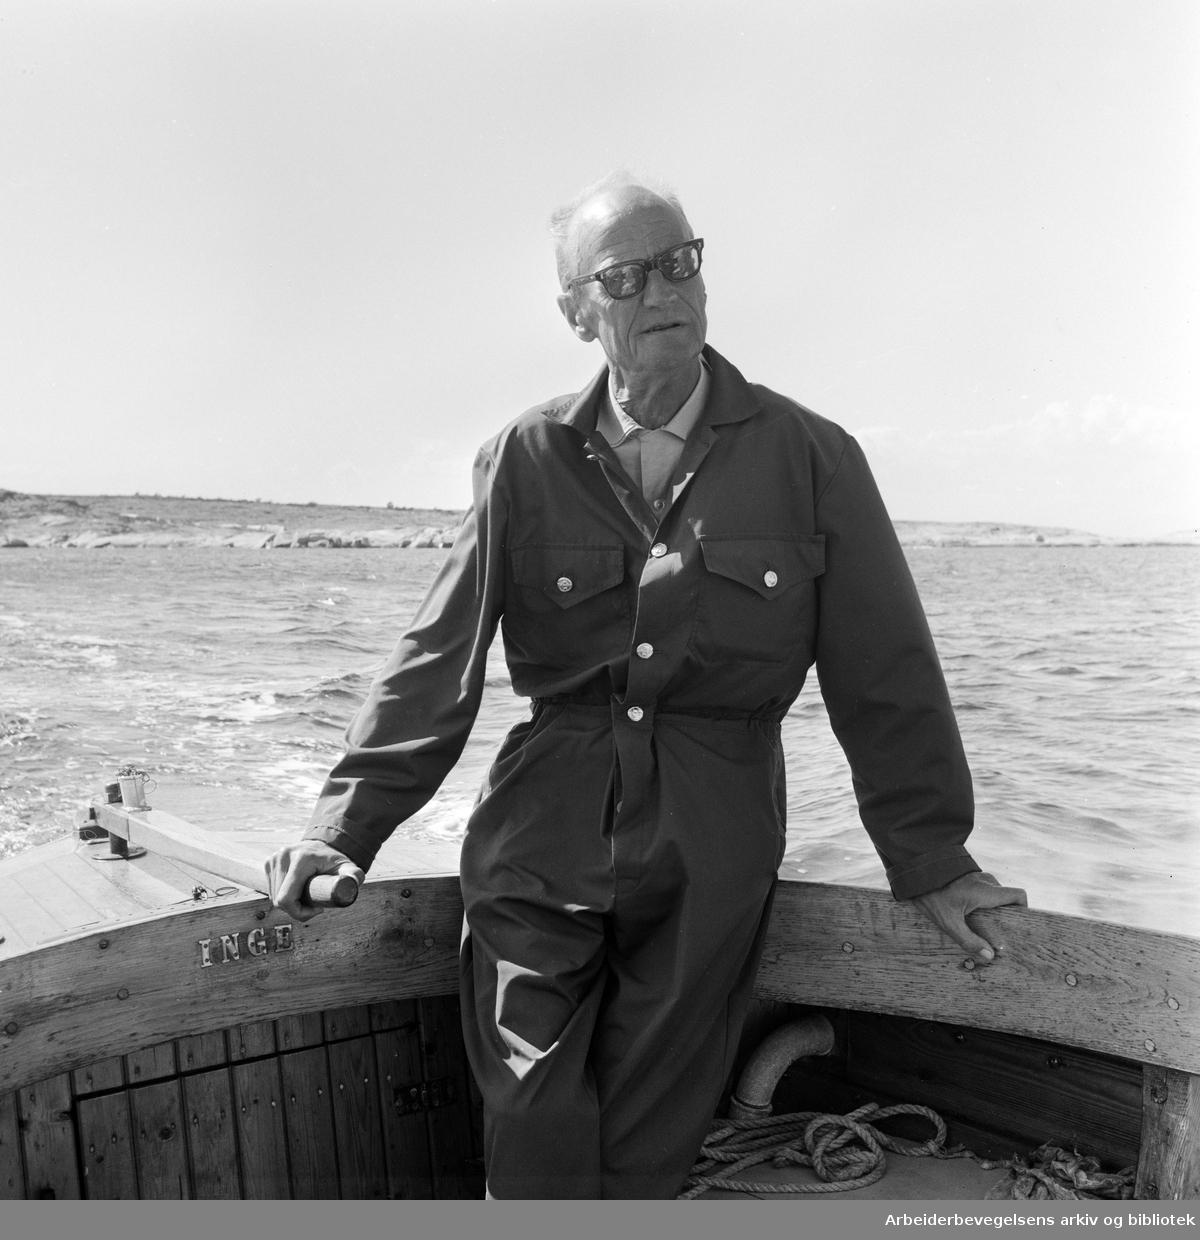 Johan Borgen intervjues av Arbeiderbladets journalist Kjell Chr. Johanssen på Akerøya. Borgen om bord i båten Inge. Juli 1966.